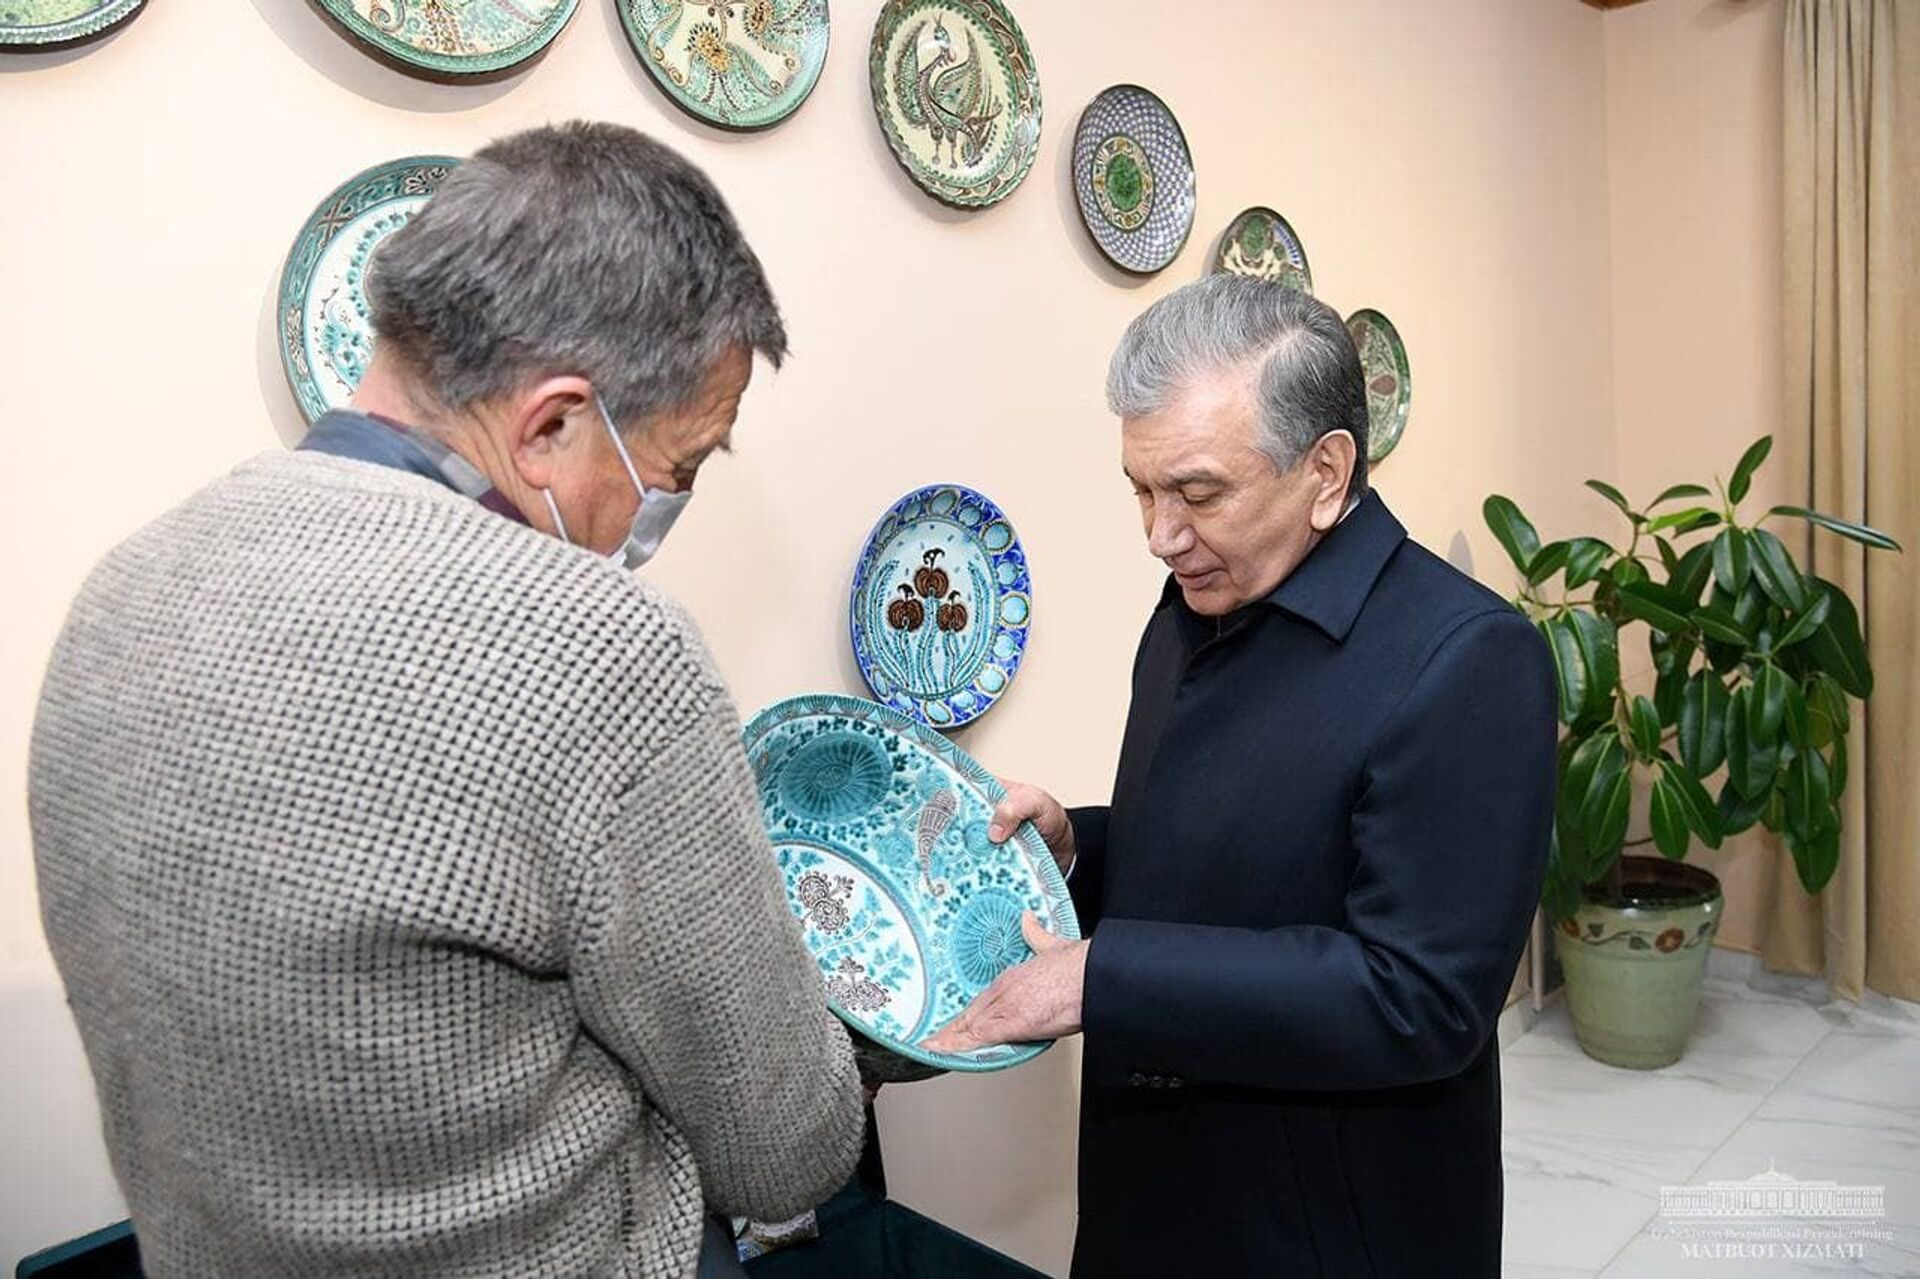 Шавкат Мирзиёев посетил Международный центр керамики, построенный в Риштанском районе - Sputnik Узбекистан, 1920, 10.03.2021